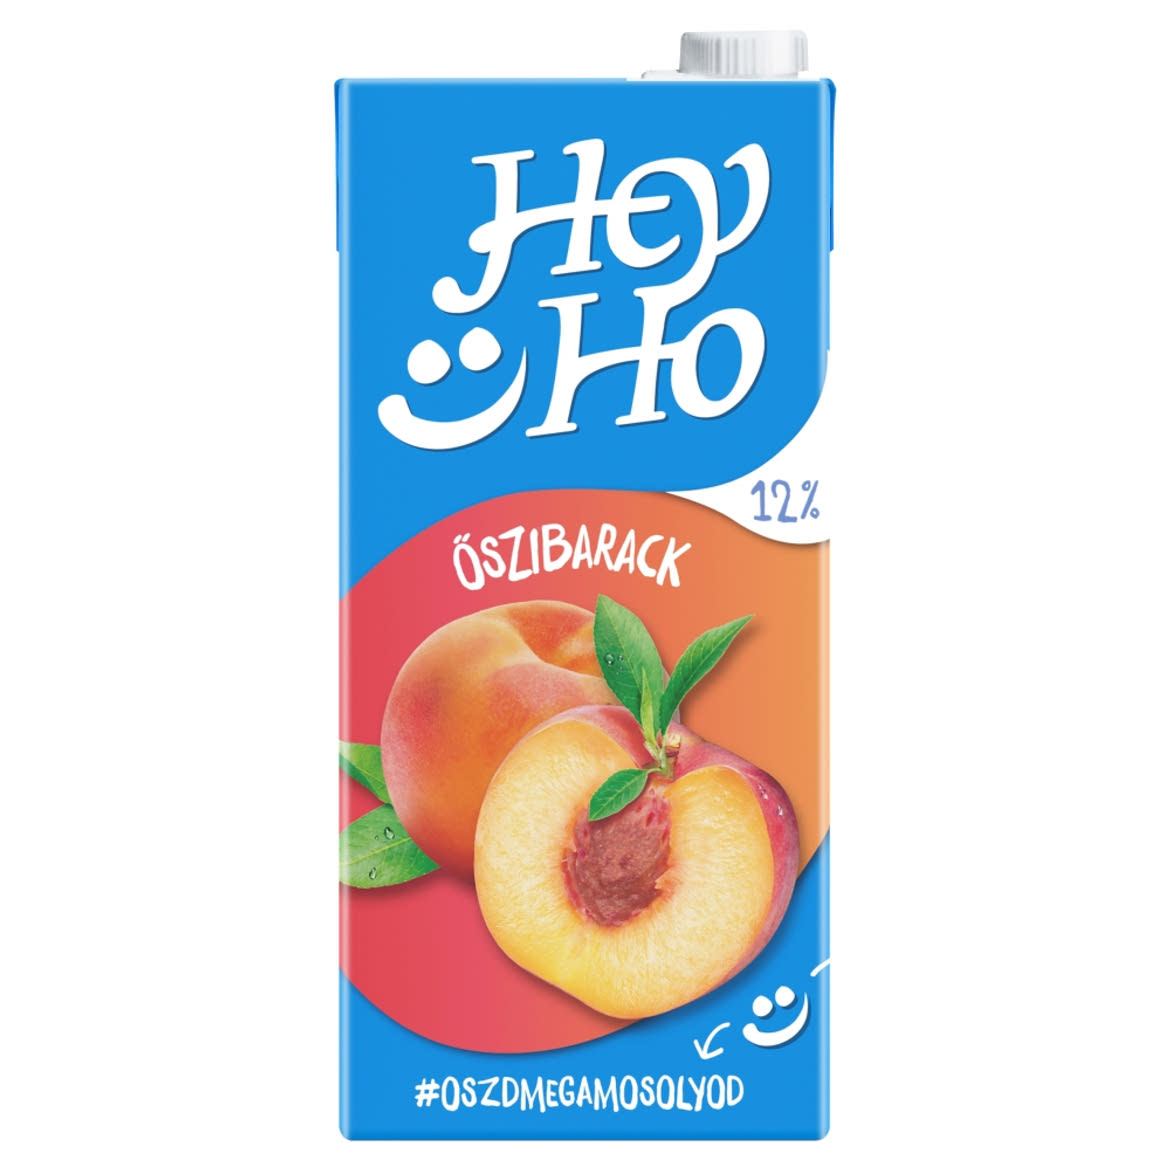 Hey-Ho őszibarack gyümölcsital cukorral és édesítőszerrel